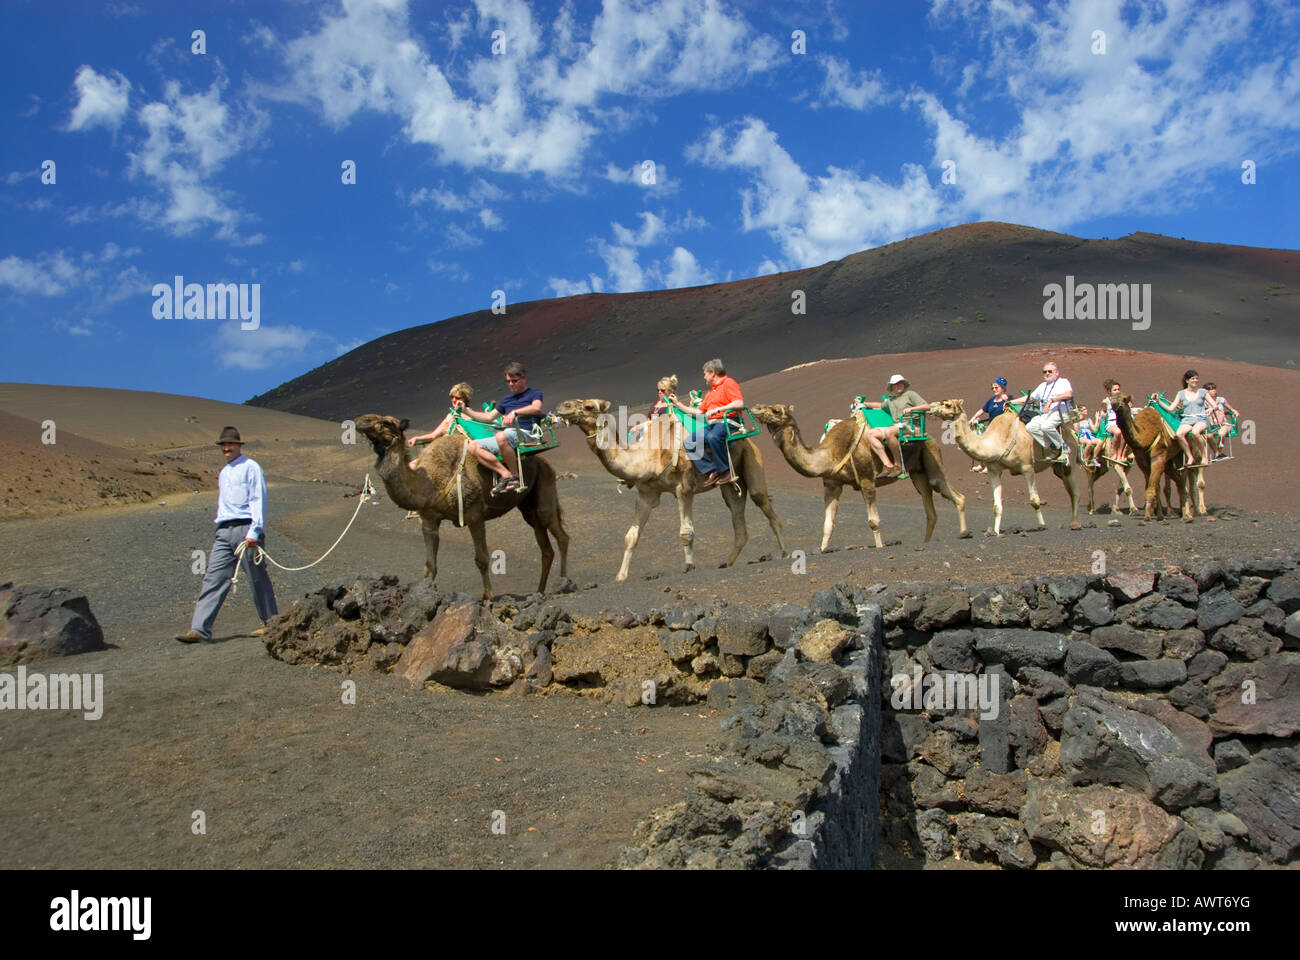 LANZAROTE TIMANFAYA train Camel trek trekking avec les touristes dans le Parc National de Timanfaya Lanzarote Iles Canaries Espagne Banque D'Images